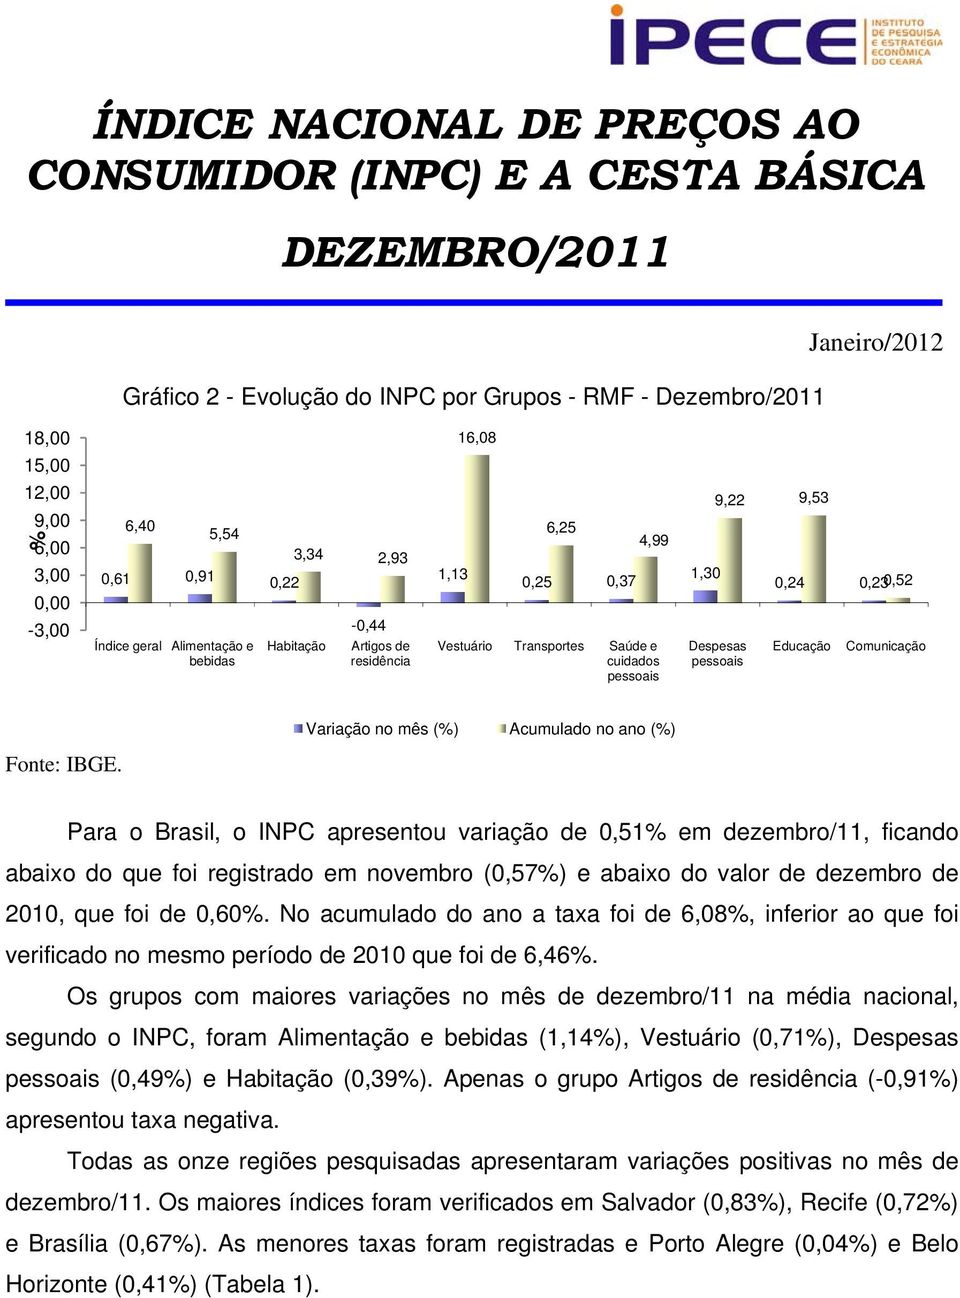 (%). Para o Brasil, o INPC apresentou variação de 0,51% em dezembro/11, ficando abaixo do que foi registrado em novembro (0,57%) e abaixo do valor de dezembro de 2010, que foi de 0,60%.